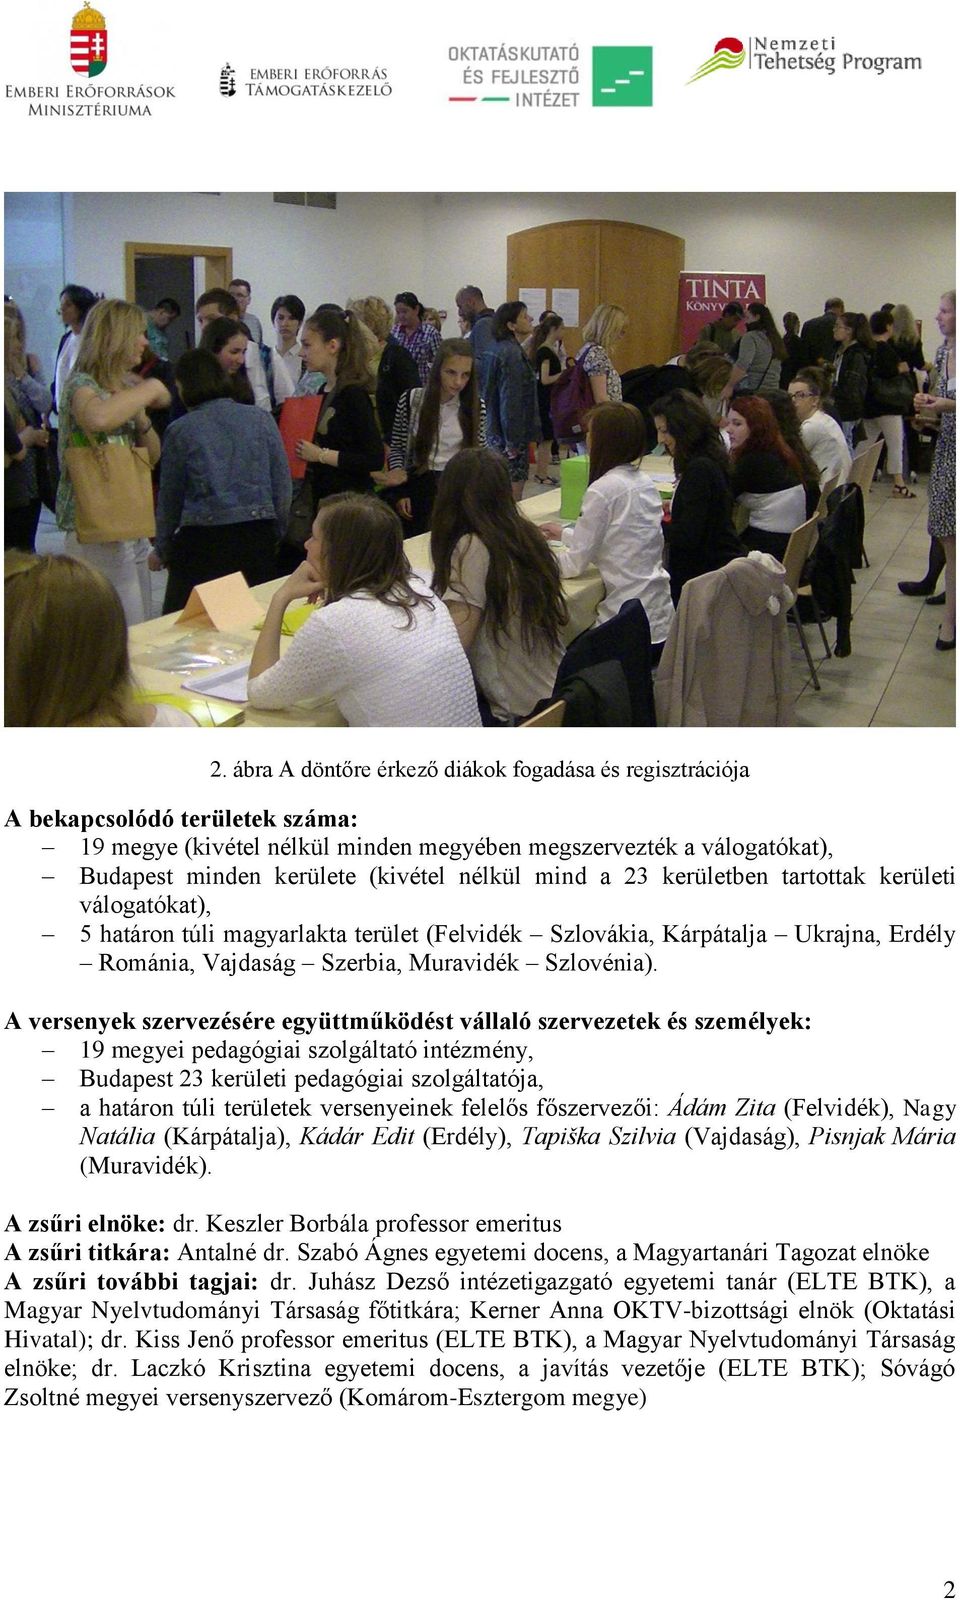 A versenyek szervezésére együttműködést vállaló szervezetek és személyek: 19 megyei pedagógiai szolgáltató intézmény, Budapest 23 kerületi pedagógiai szolgáltatója, a határon túli területek